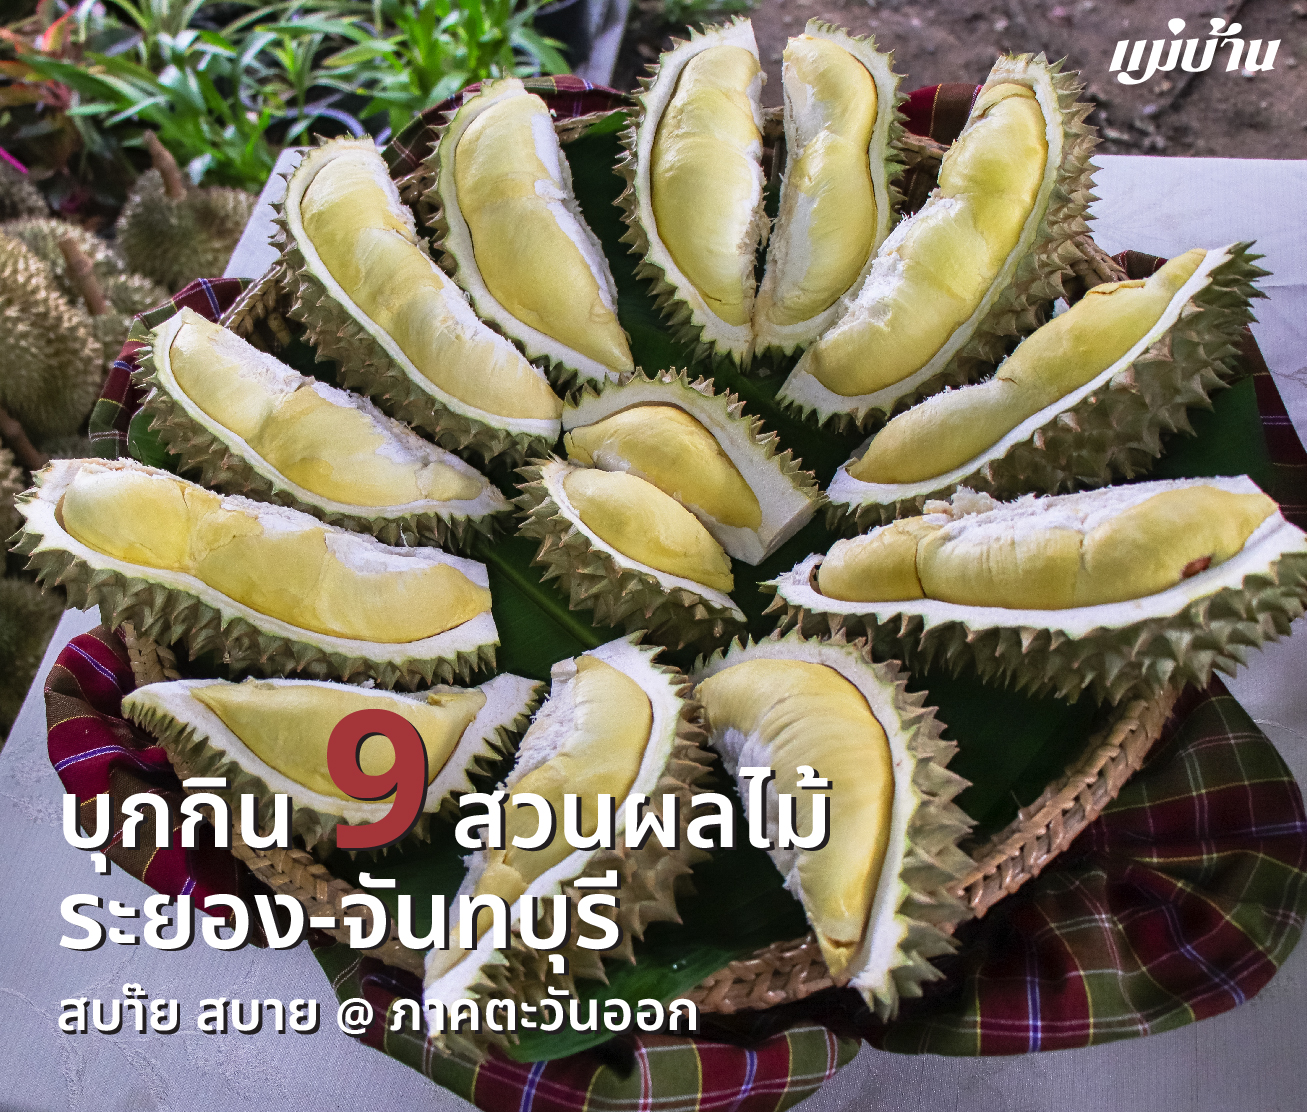 บุกกิน 9 สวนผลไม้ ระยอง-จันทบุรี สบ๊าย สบาย @ ภาคตะวันออก สำนักพิมพ์แม่บ้าน